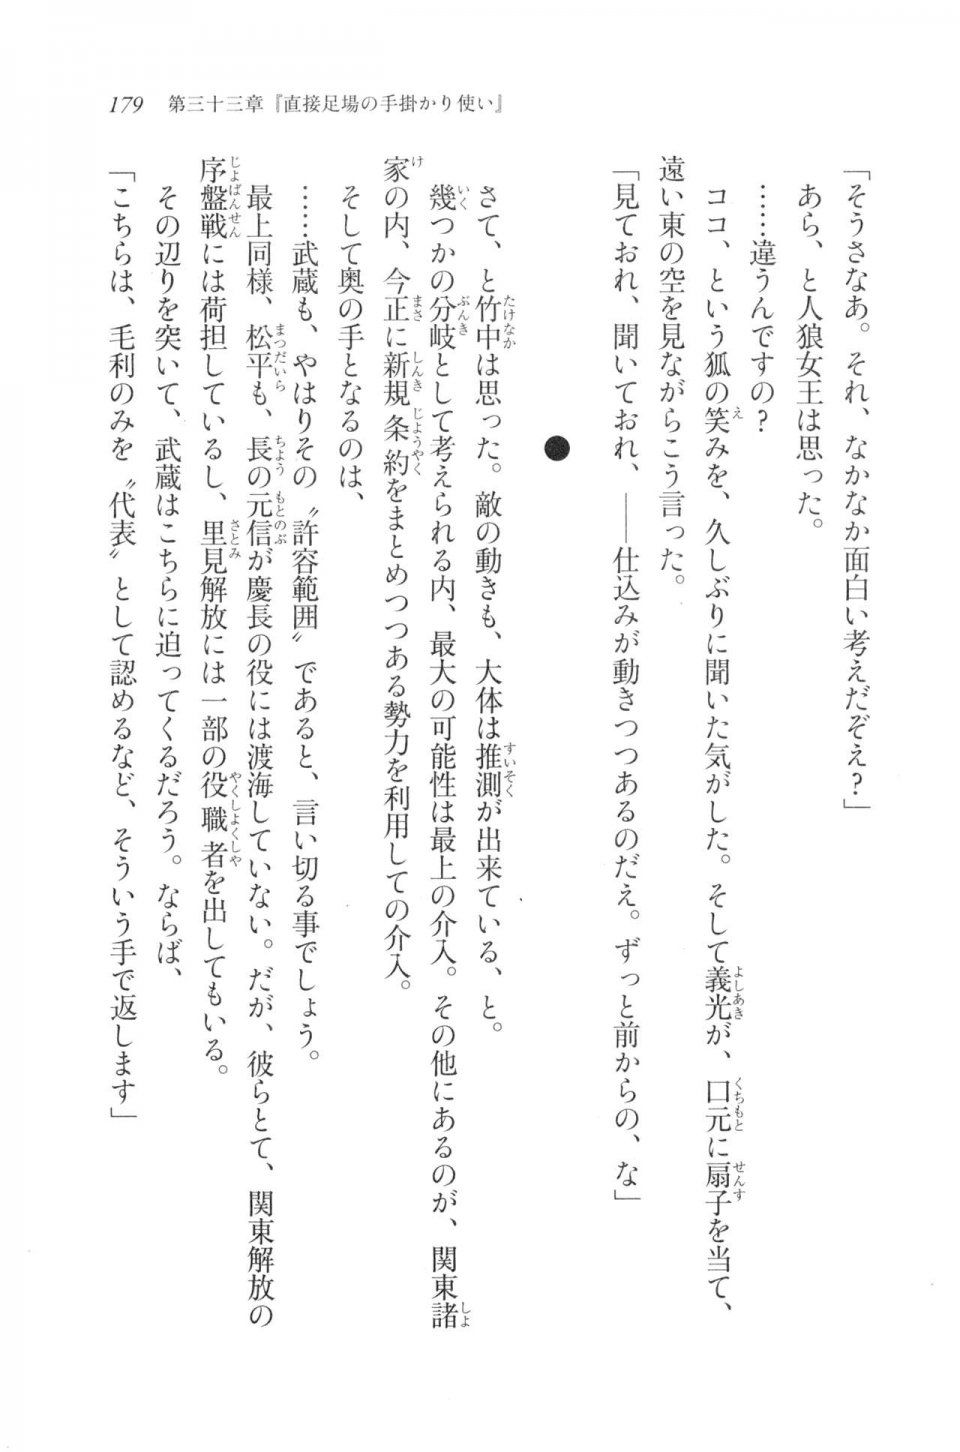 Kyoukai Senjou no Horizon LN Vol 20(8B) - Photo #179